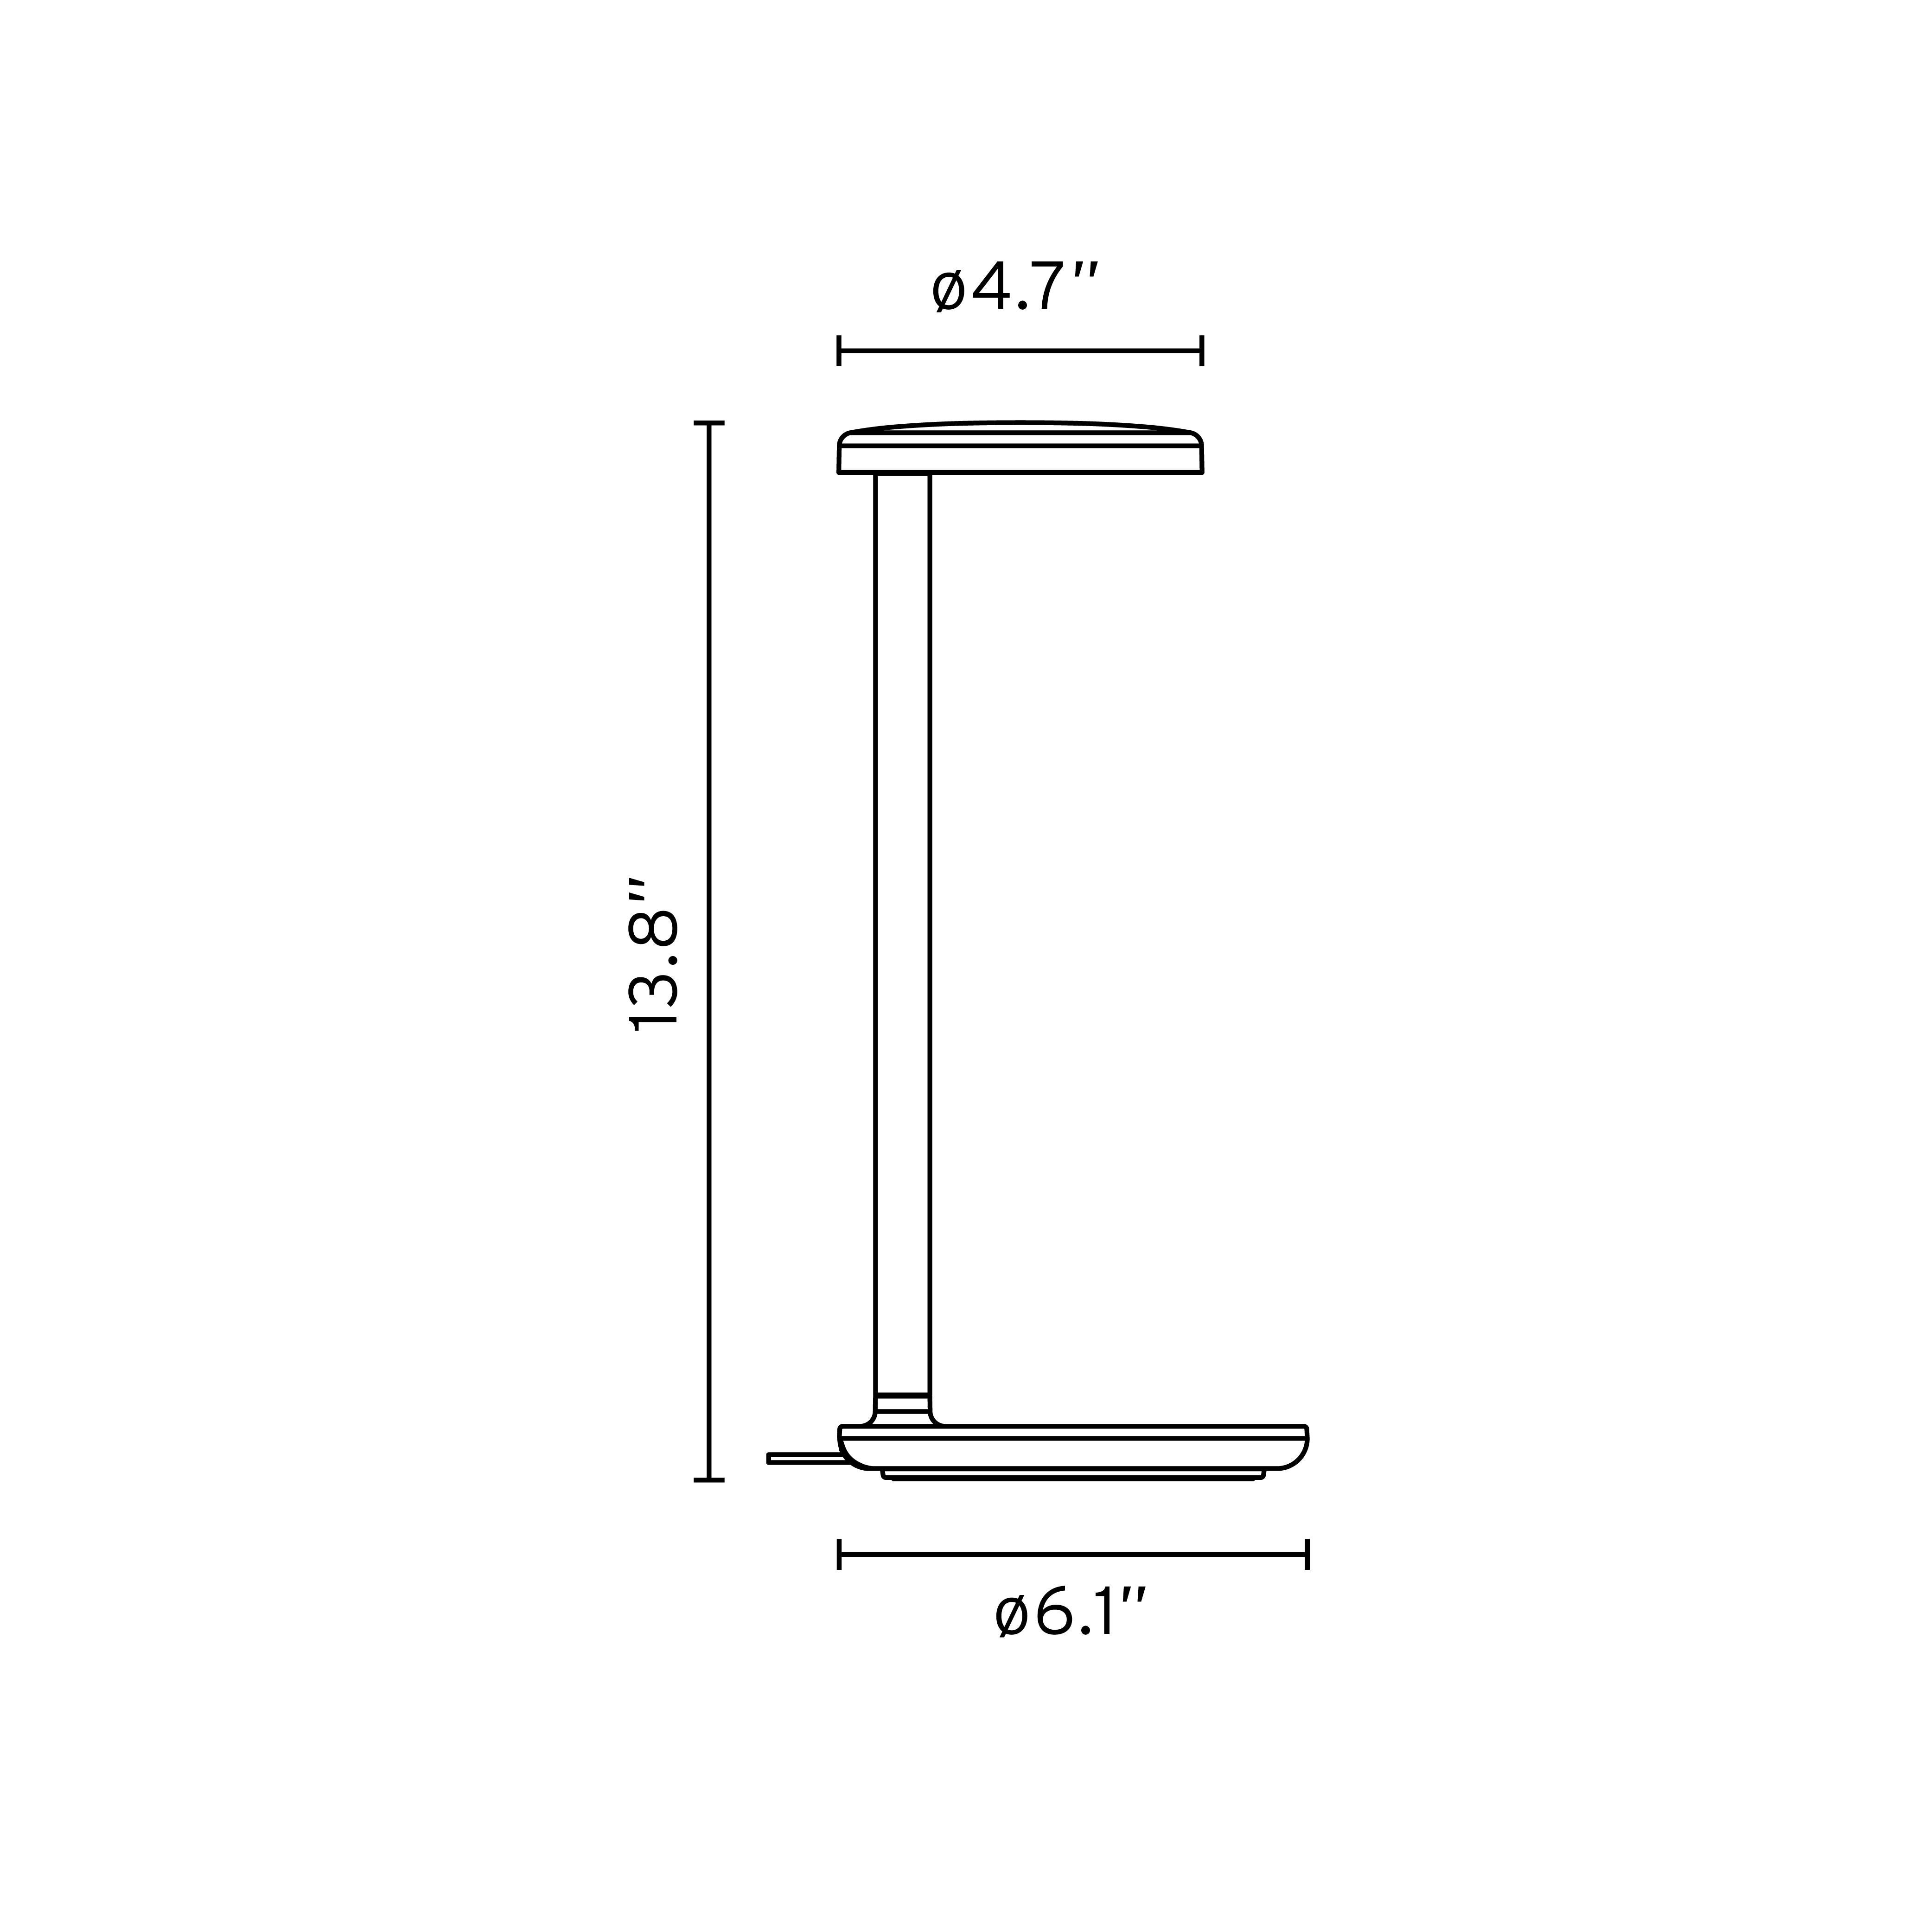 Oblique ist die natürliche Weiterentwicklung des klassischen Büro-Schwenkarmmodells. Mit ihrer robusten, kompakten Struktur und ihrem minimalistischen Design erzeugt die Oblique einen patentierten, leistungsstarken und kontrollierten asymmetrischen